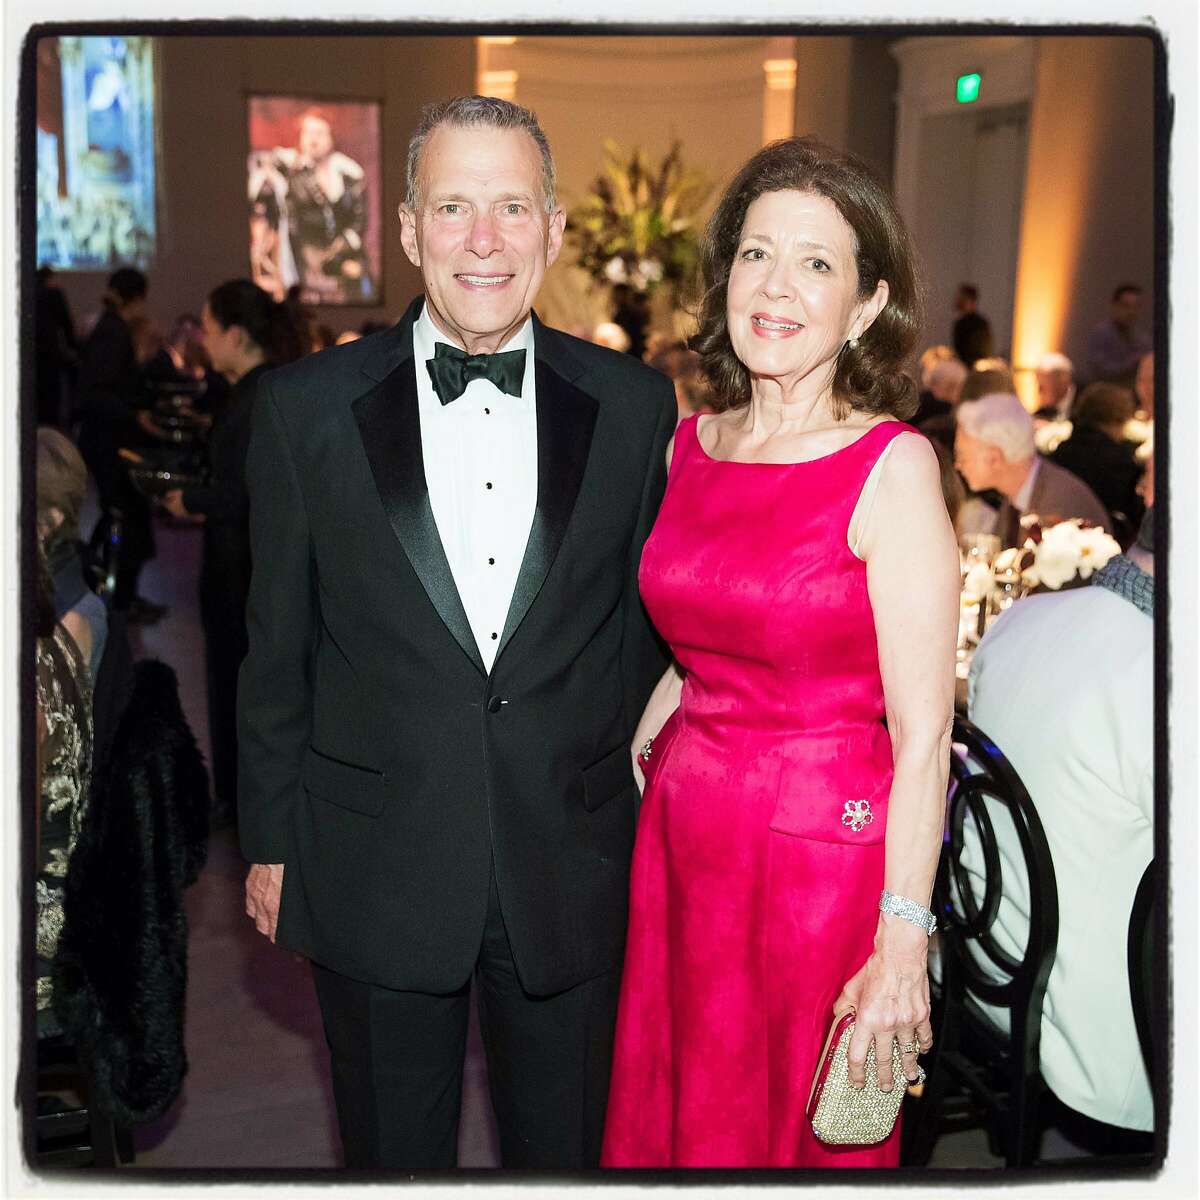 SF Opera General Director Emeritus David Gockley and his partner, Linda Kempner, at the dinner-concert in his honor. June 2016. By Drew Altizer.